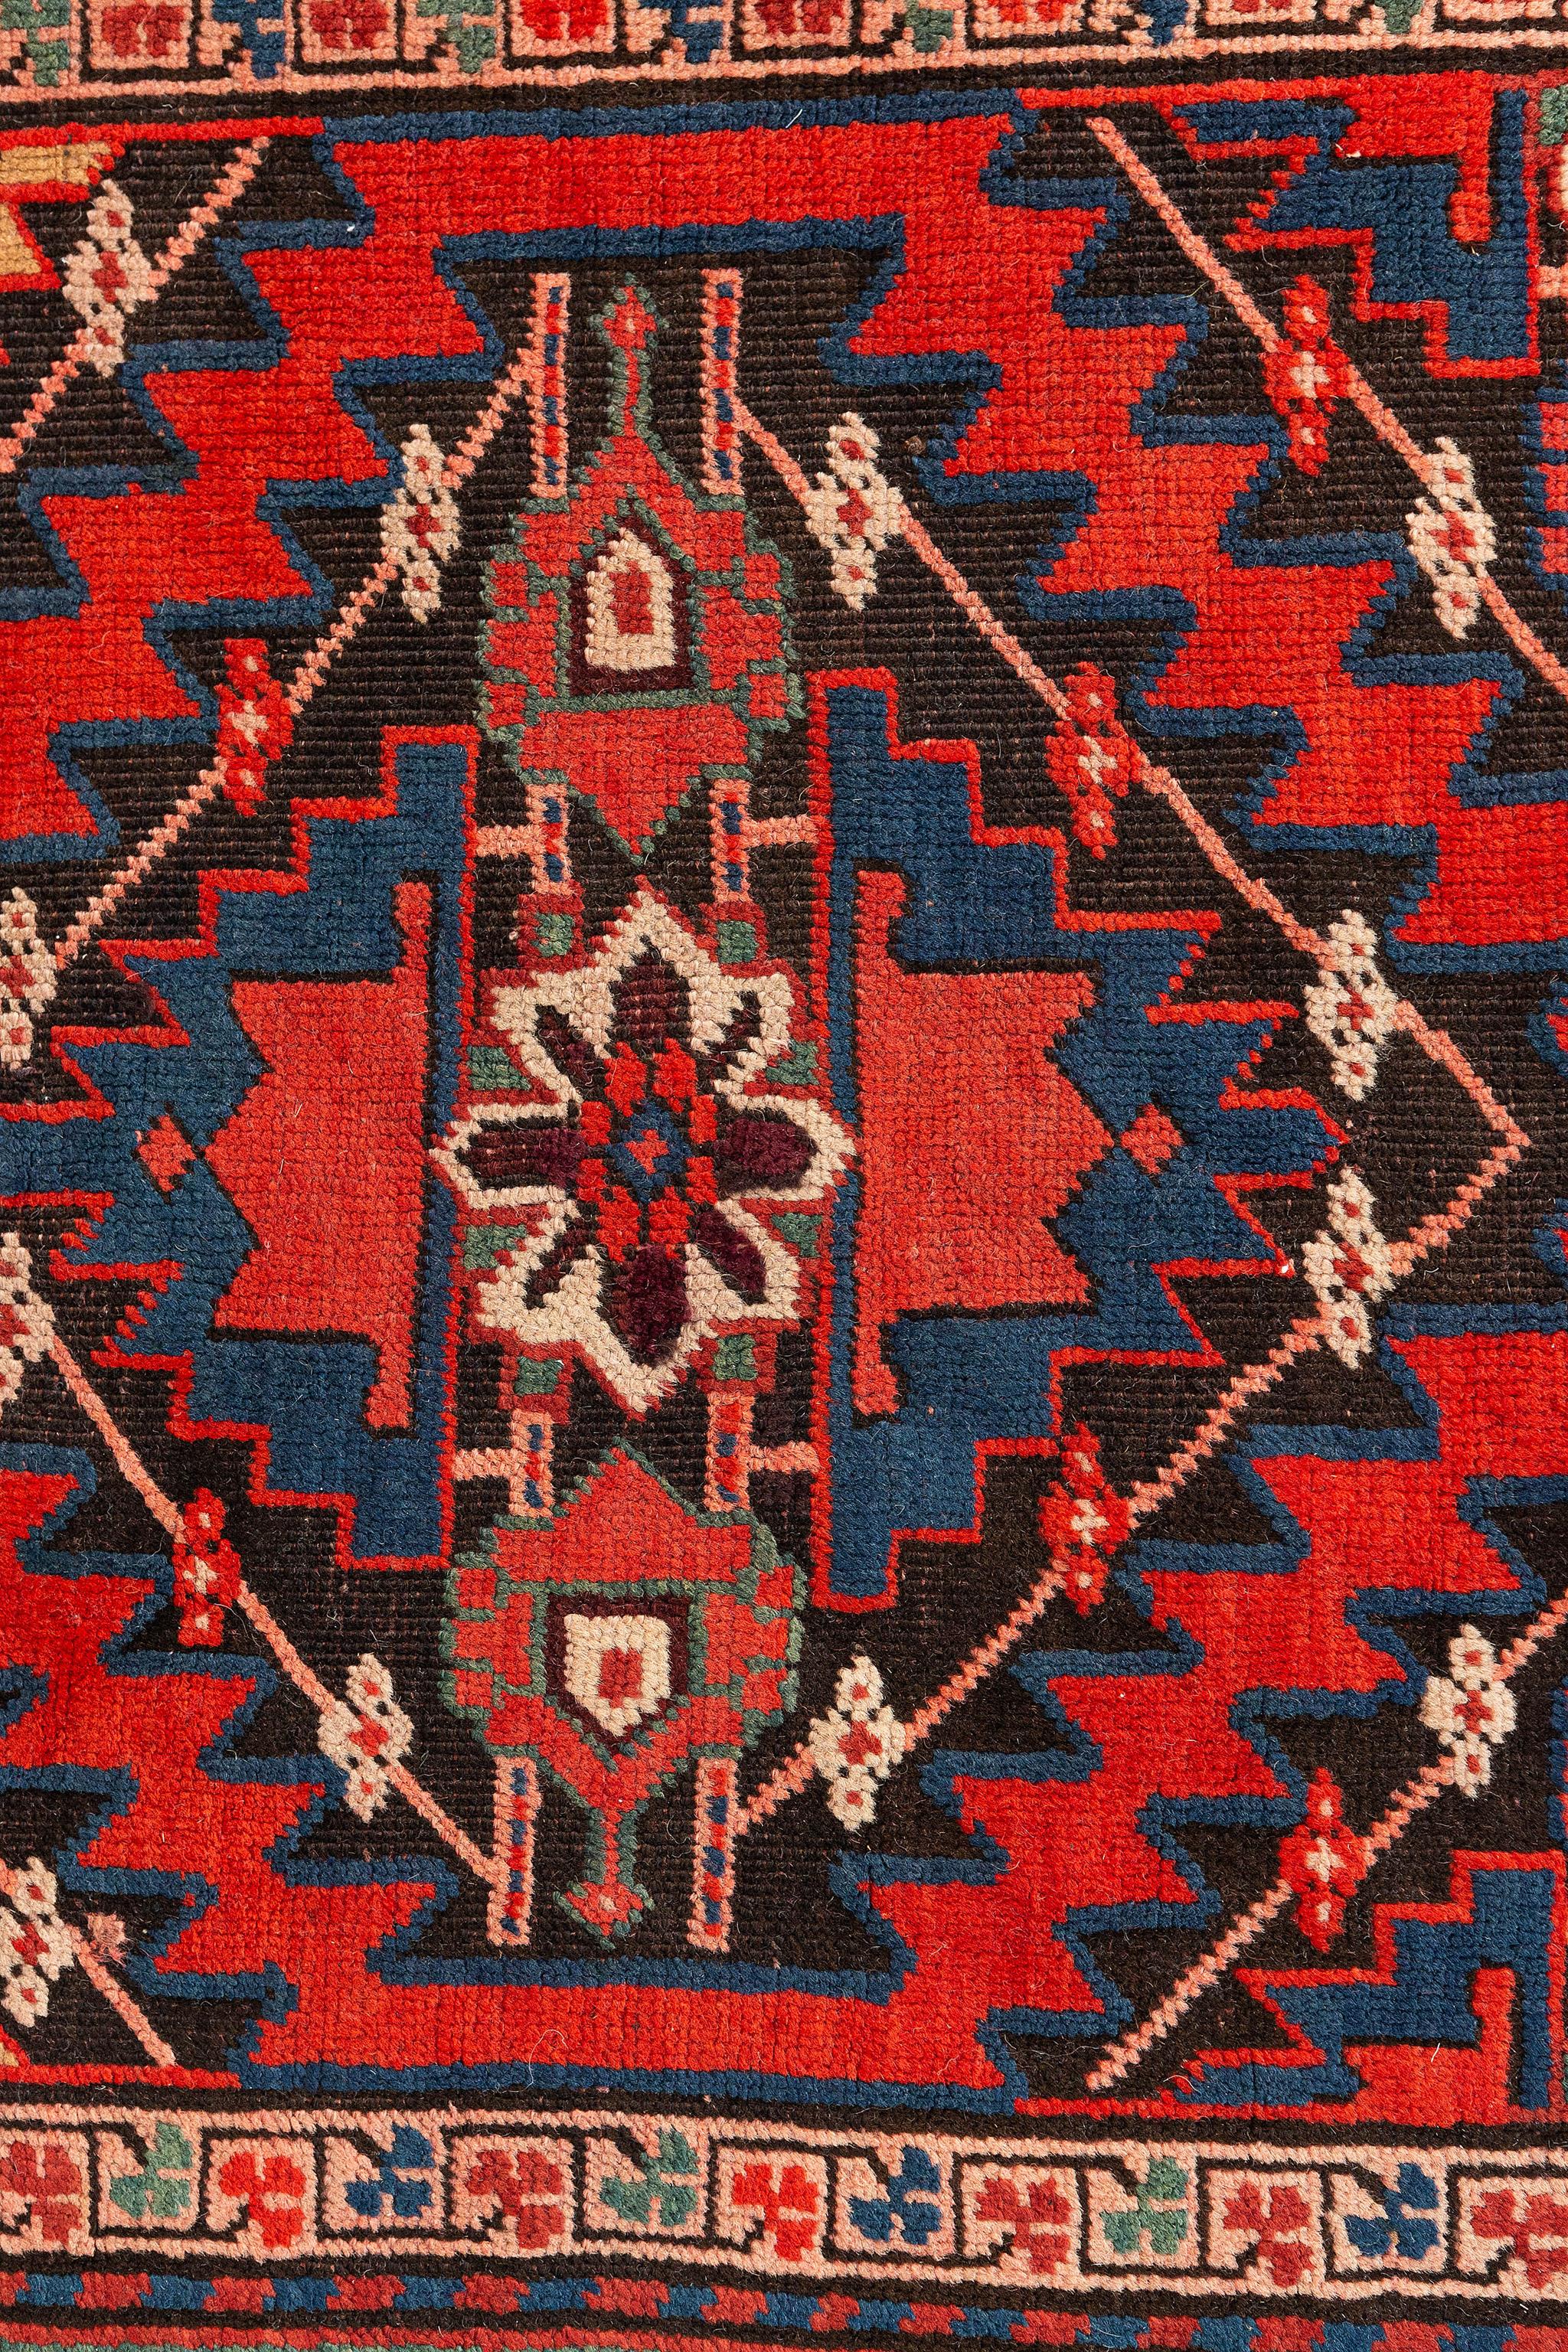 Dieser russische Kazak-Runenr-Teppich im Vintage-Stil weist fünf rote achteckige Guls auf, die mit königsblauen Riegelhaken umrandet sind. Jedes Gul ist mit einem achtzackigen Stern der Weisheit auf einem beigen Hintergrund gefüllt, der von